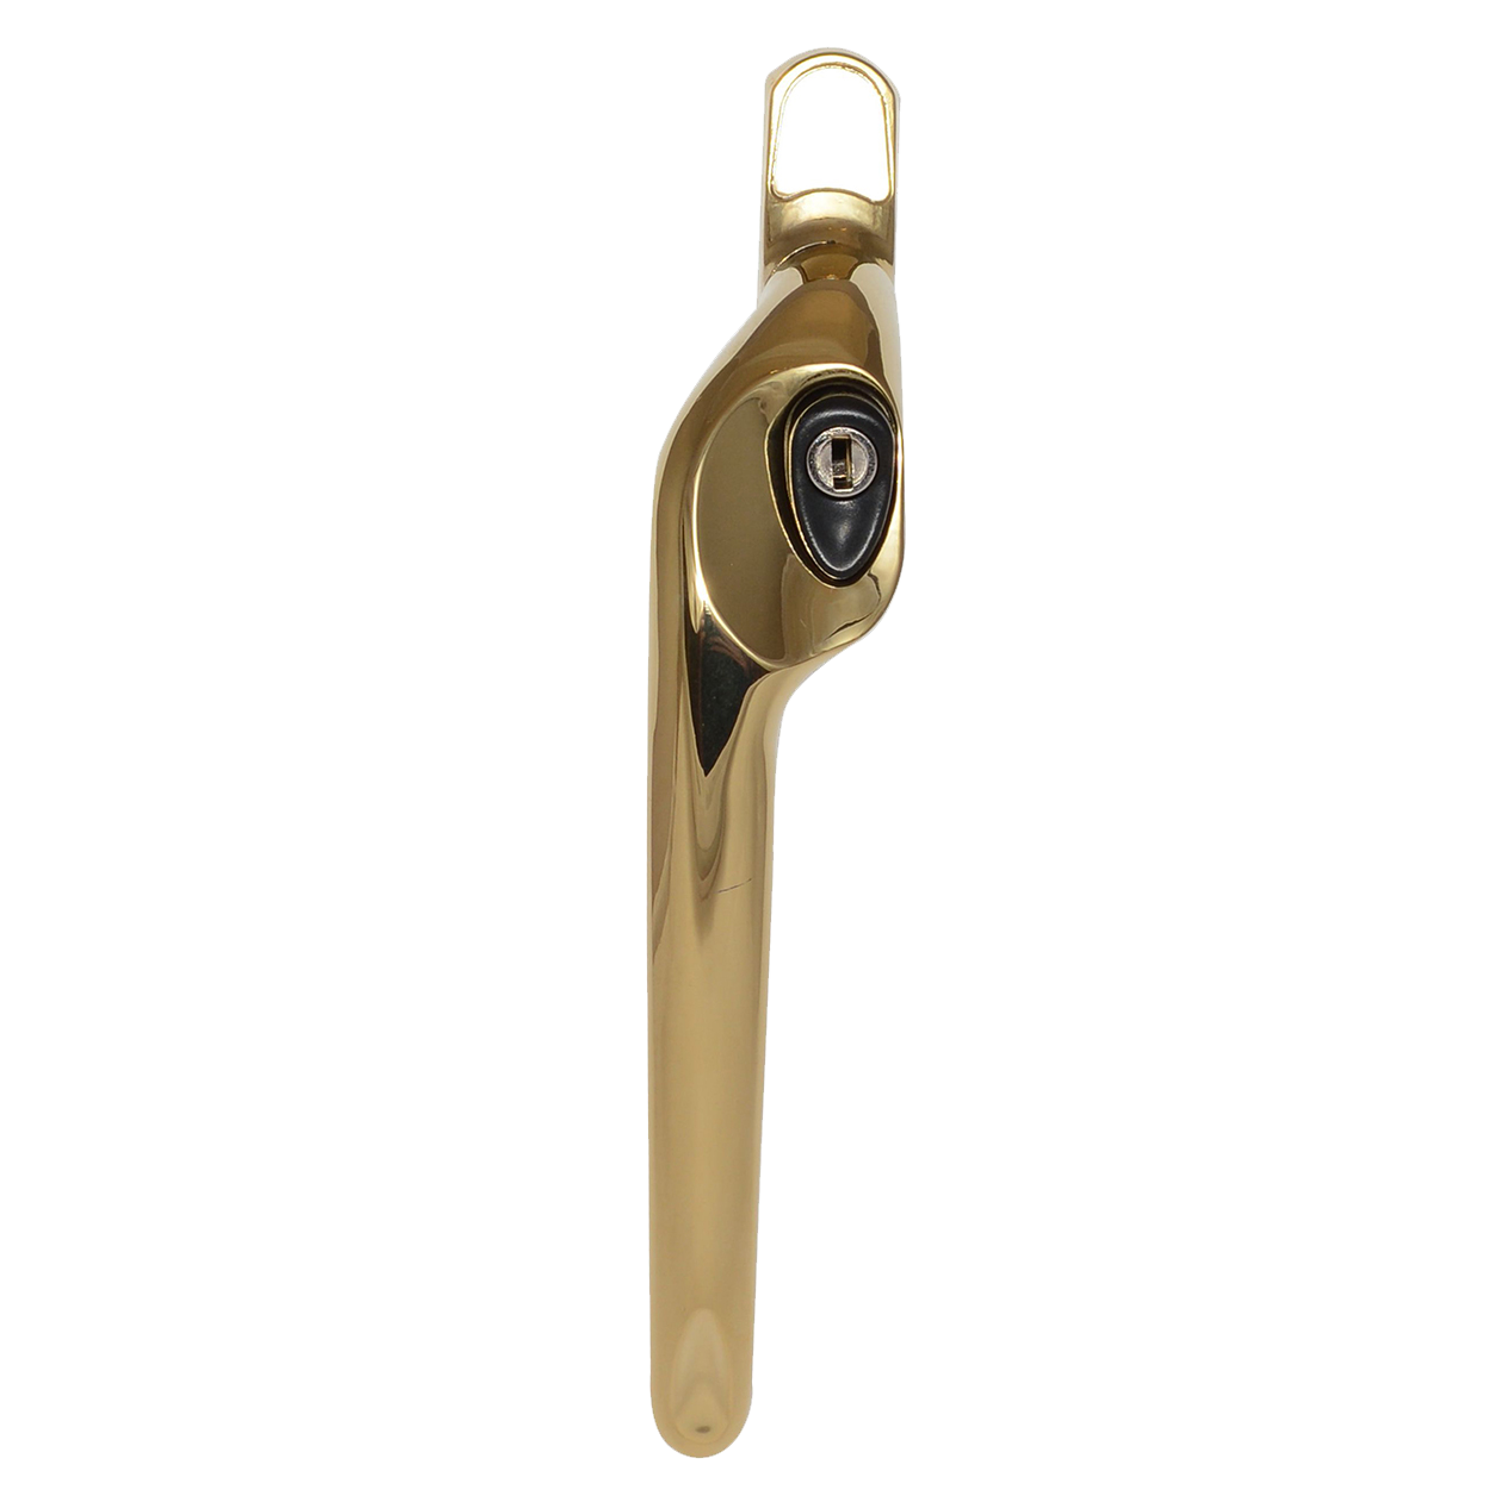 40mm Maxim Offset LH Locking Window Handle (Hardex Gold) - Horizon Plastics Online